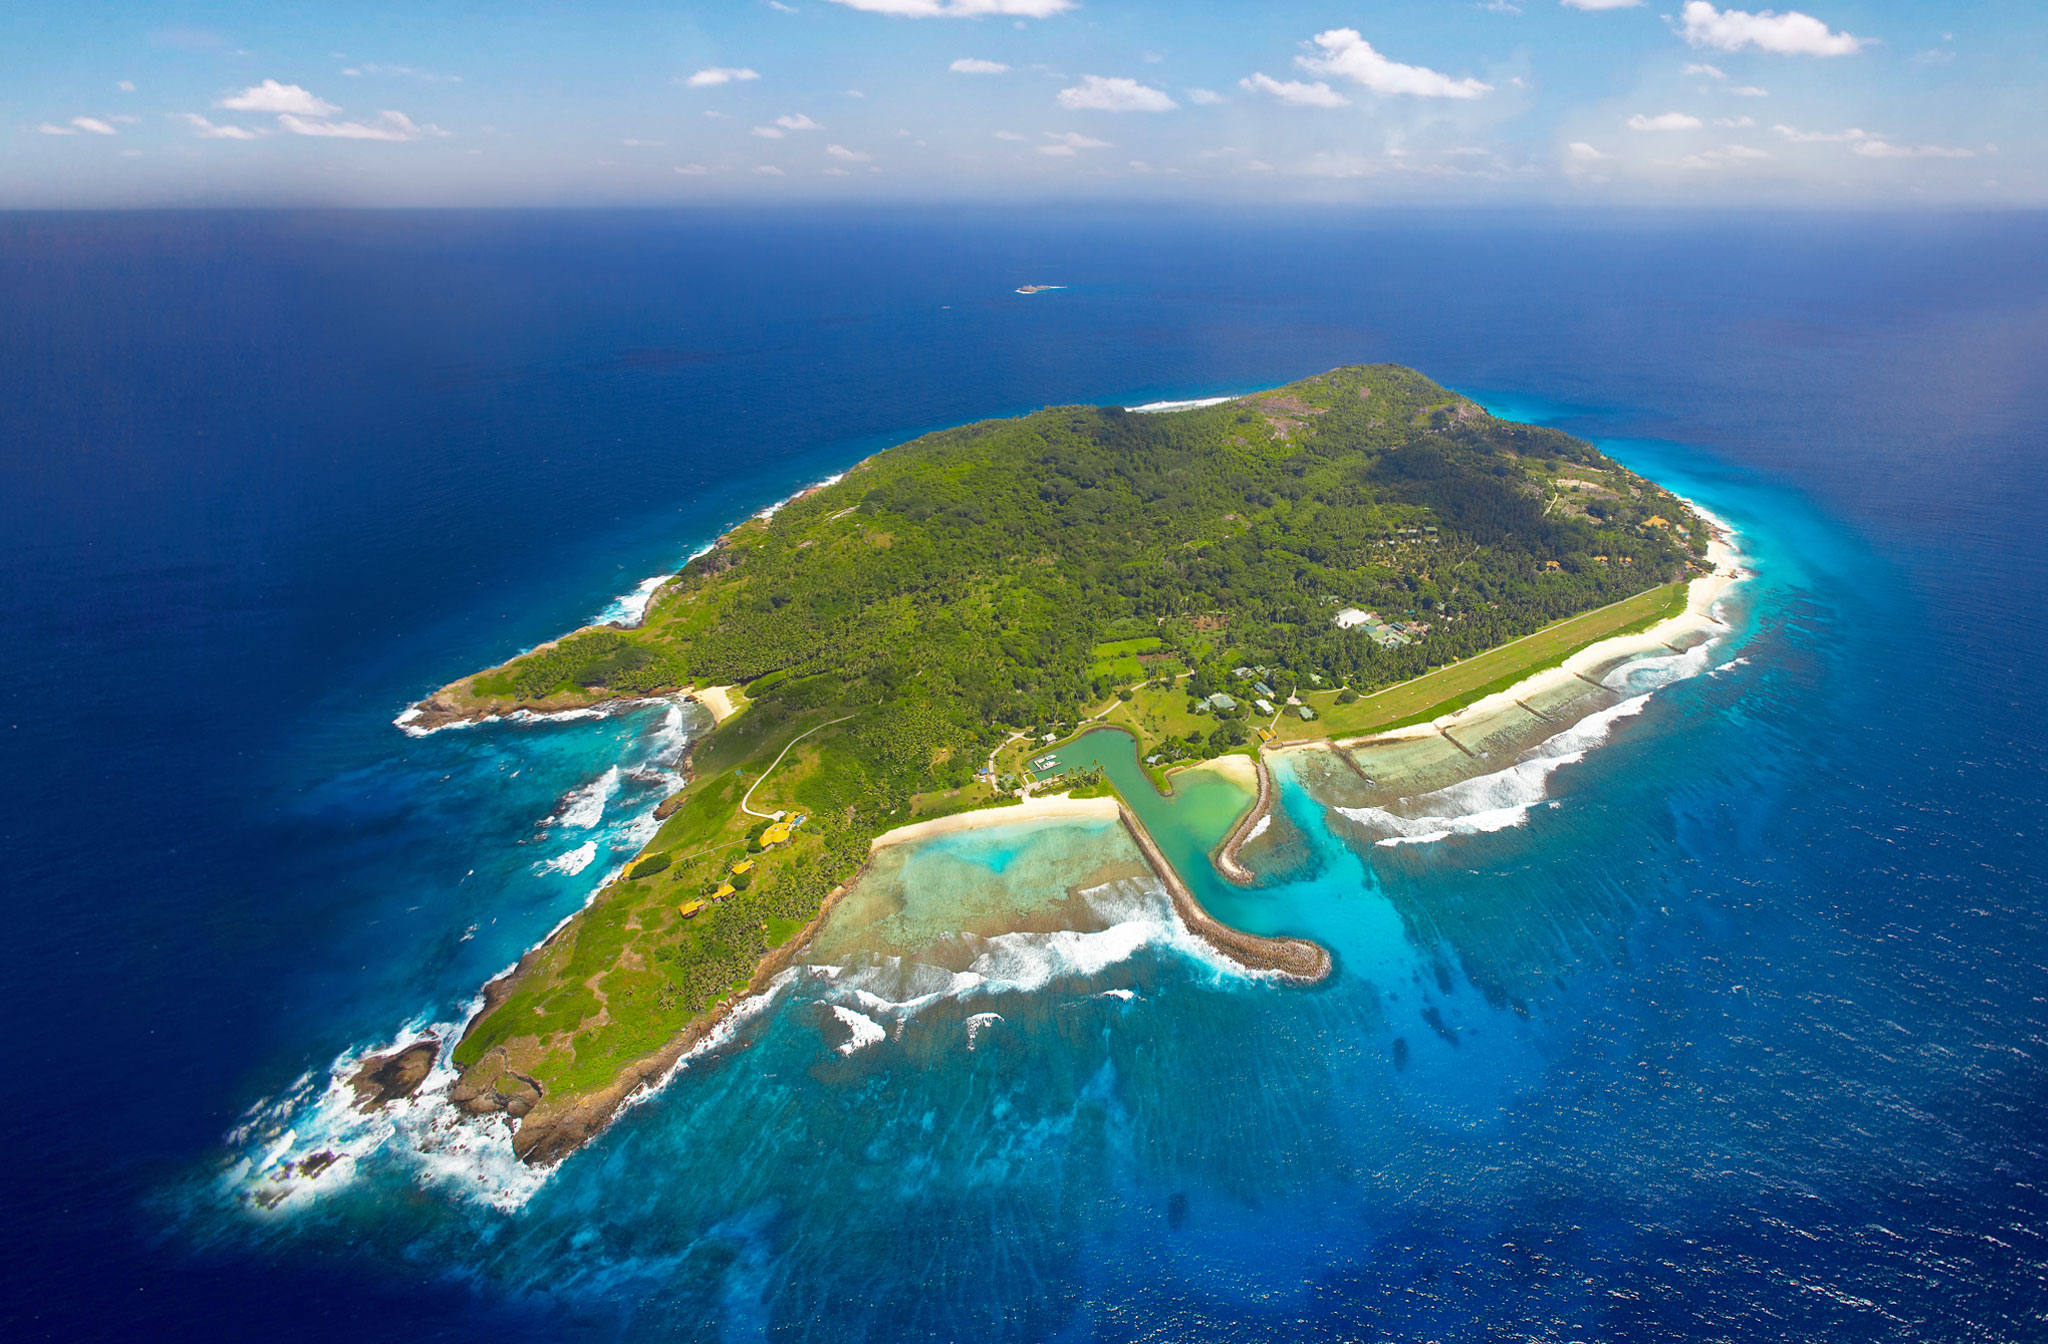 马来西亚最美十大岛屿 第一名你绝对没有去过!